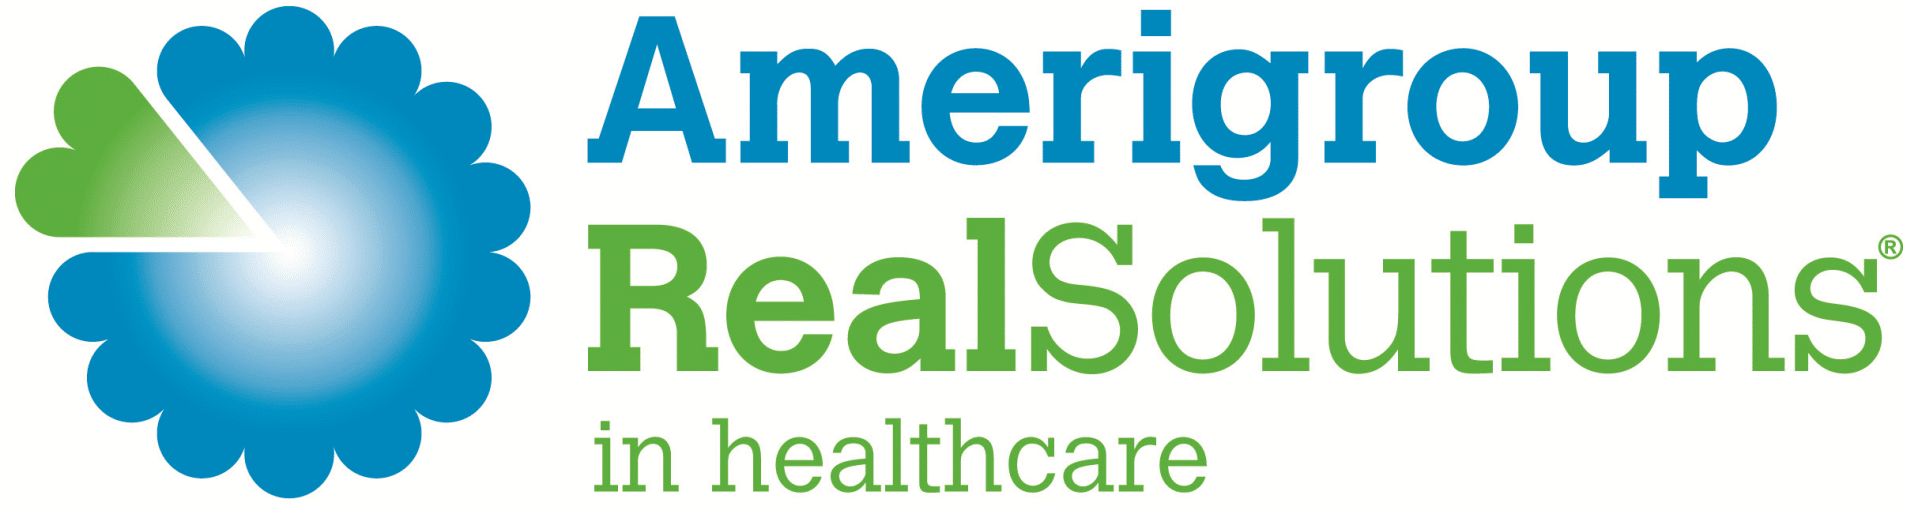 Amerigroup washington provider services number change healthcare medical coder 2 job